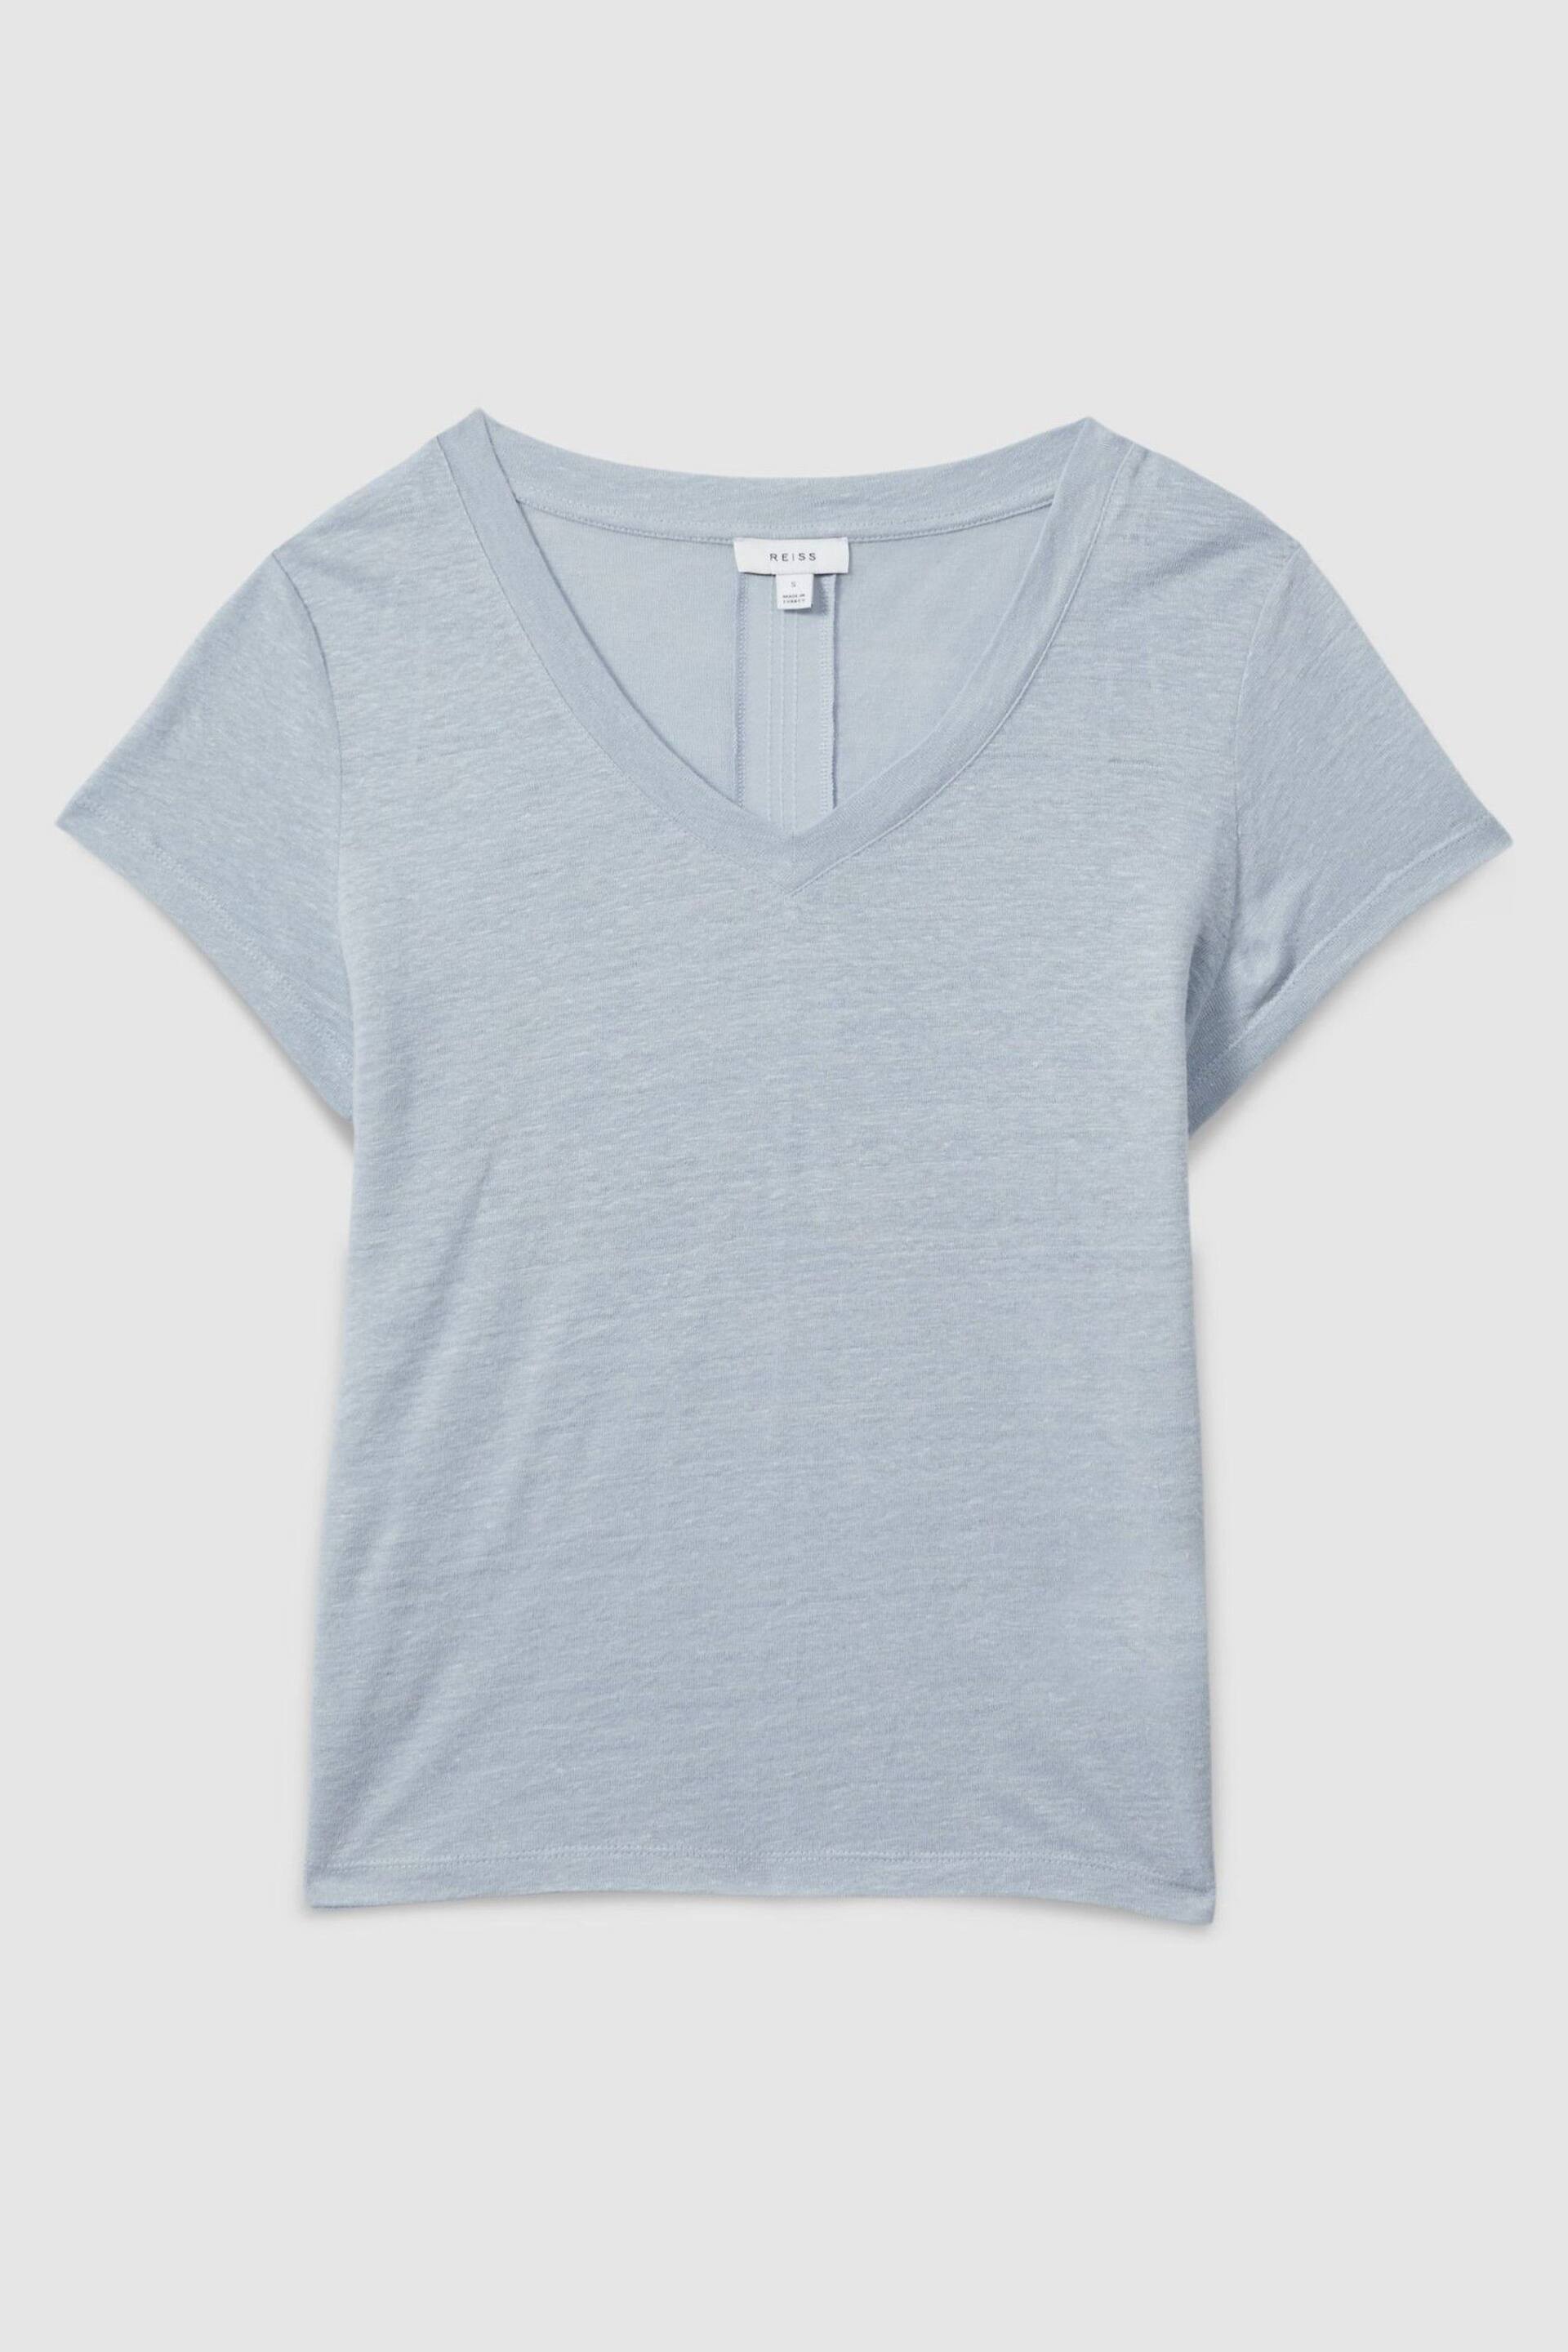 Reiss Light Blue Lottie Marled Linen V-Neck T-Shirt - Image 2 of 6